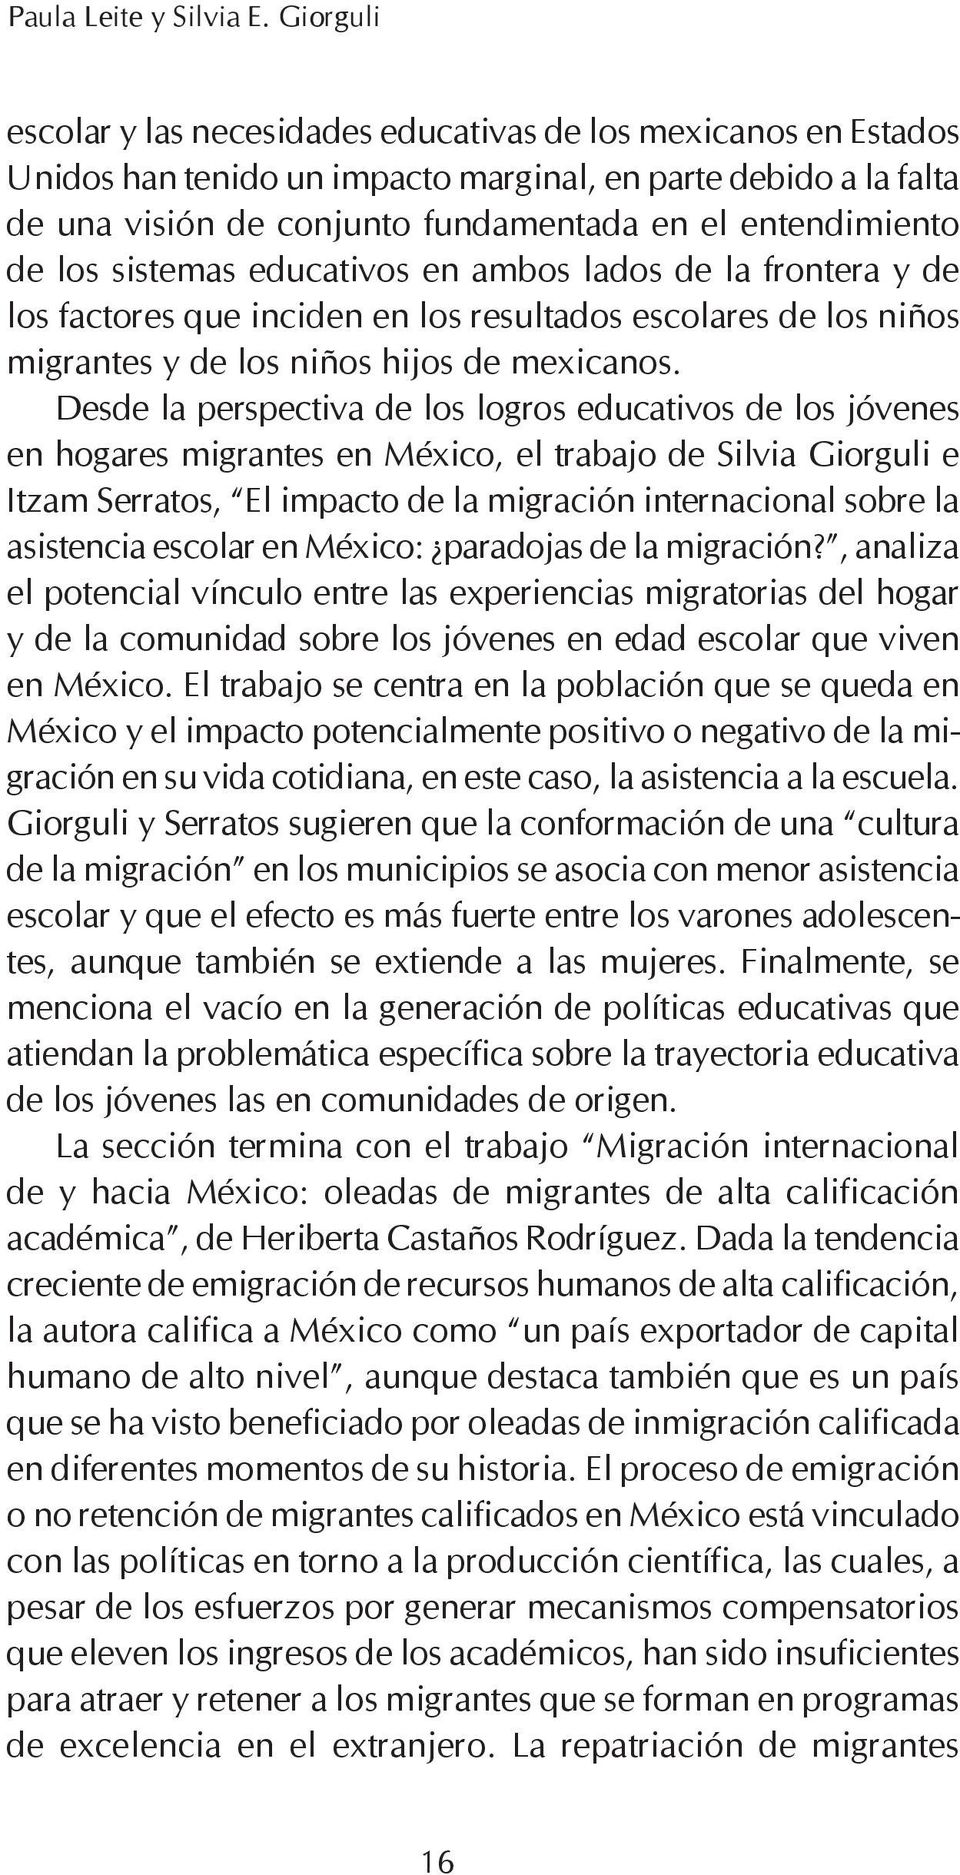 de los sistemas educativos en ambos lados de la frontera y de los factores que inciden en los resultados escolares de los niños migrantes y de los niños hijos de mexicanos.